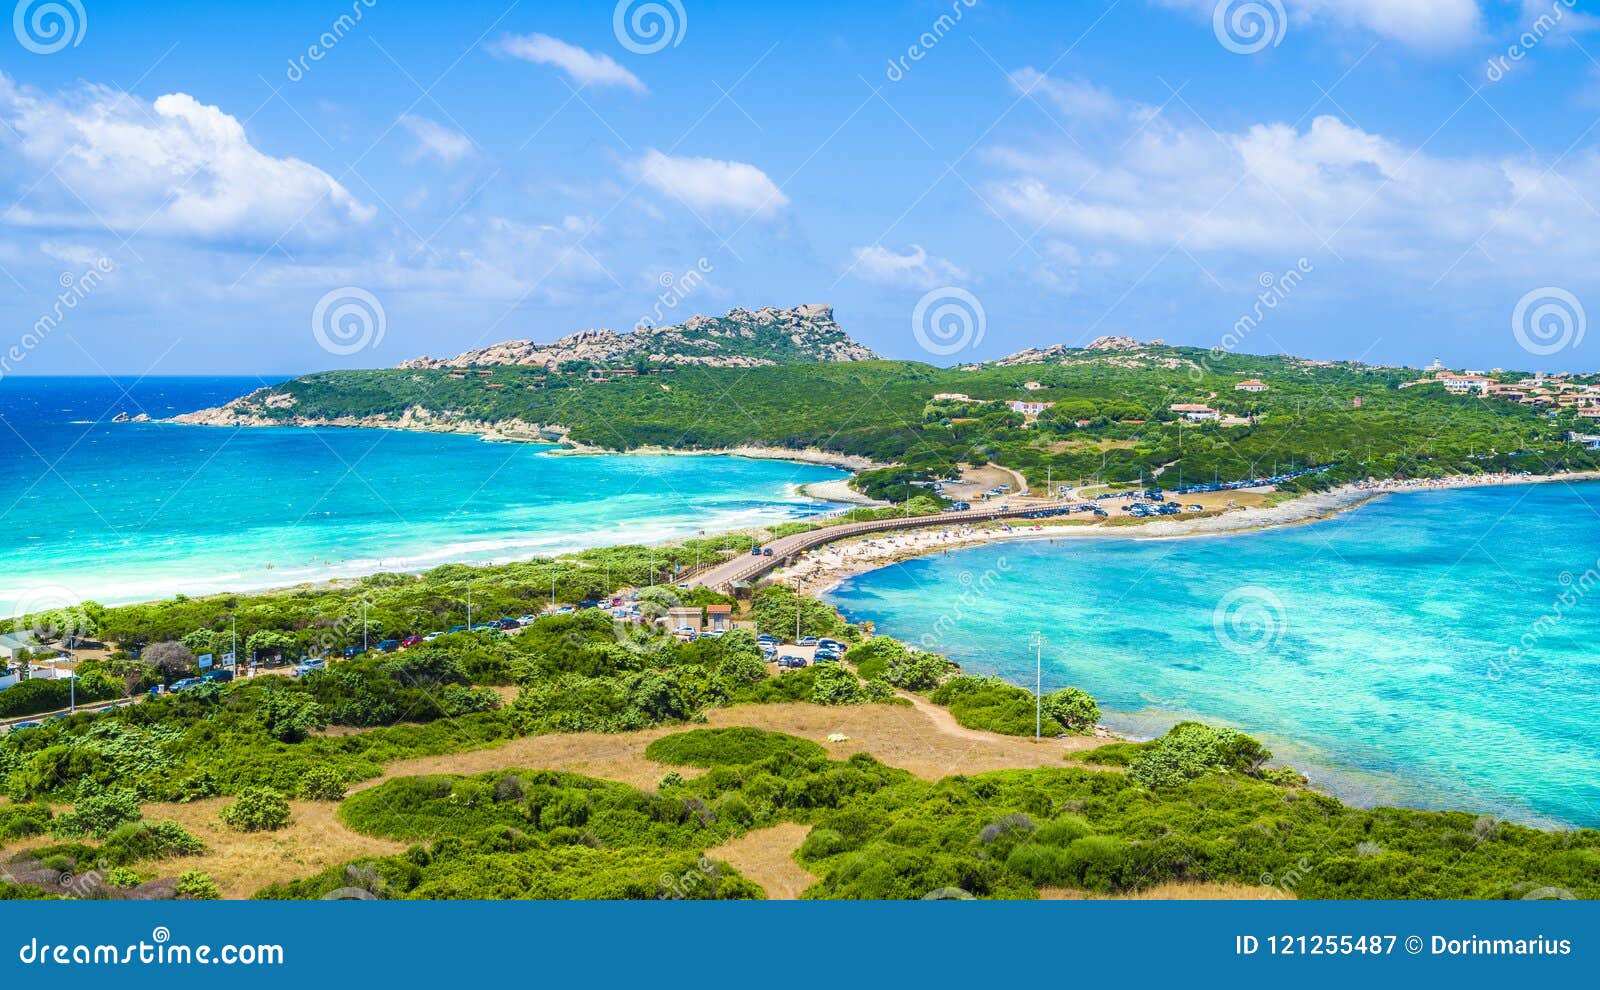 landscape with rena di levante and rena di ponente beach, capo testa, sardinia, italy